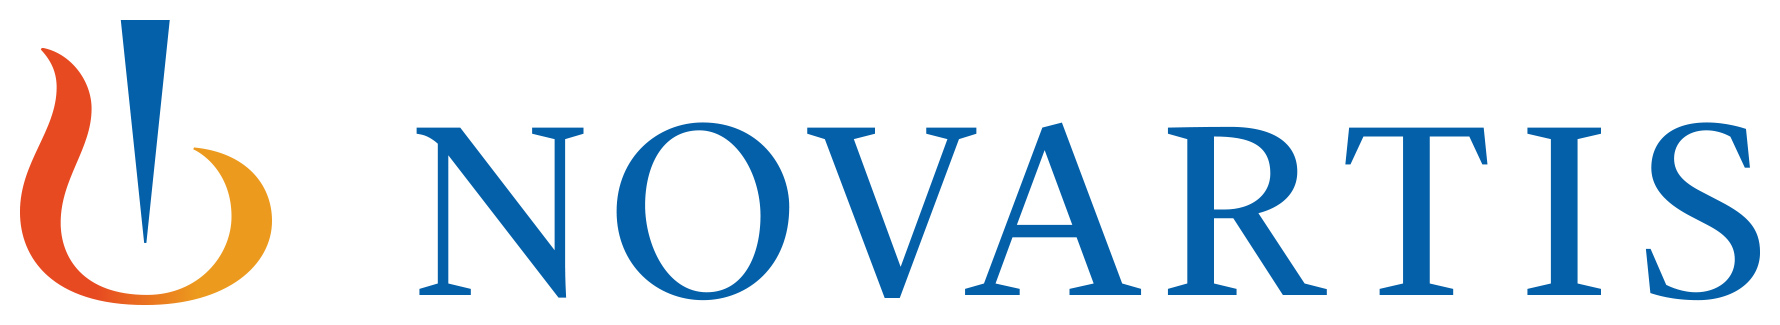 Tvrtkom Novartis